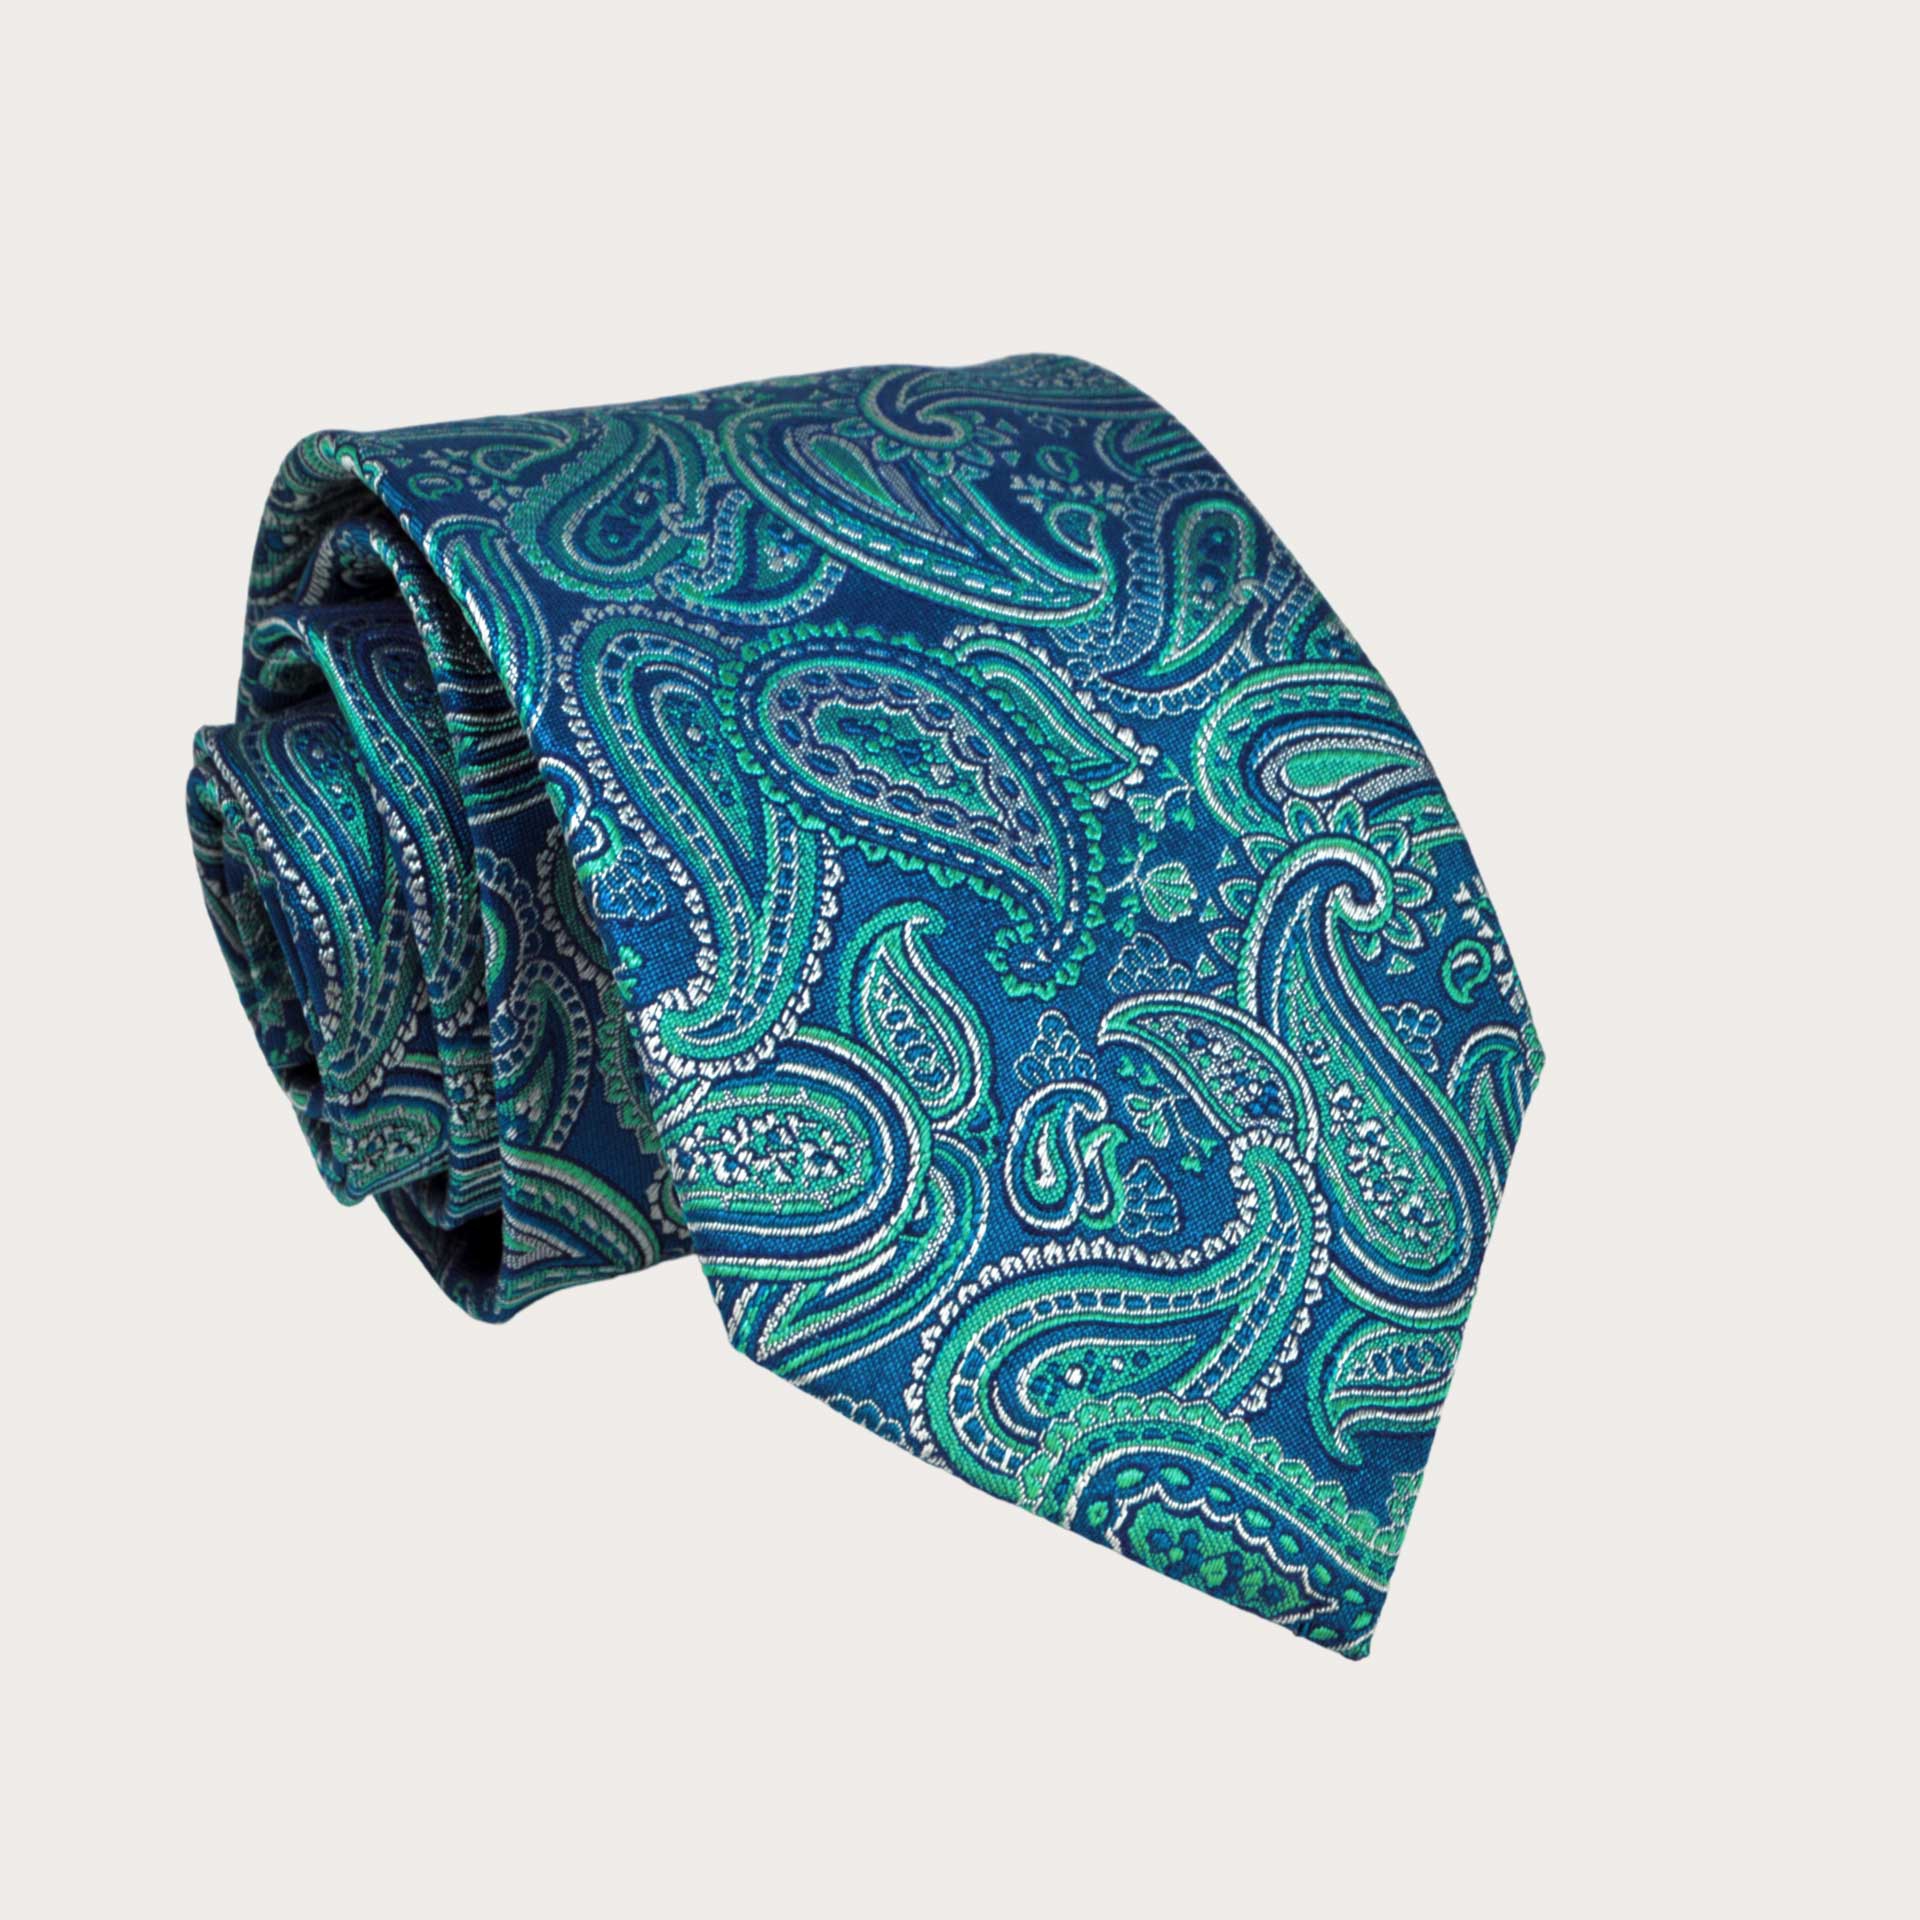 BRUCLE Corbata de hombre paisley azul y verde en seda jacquard